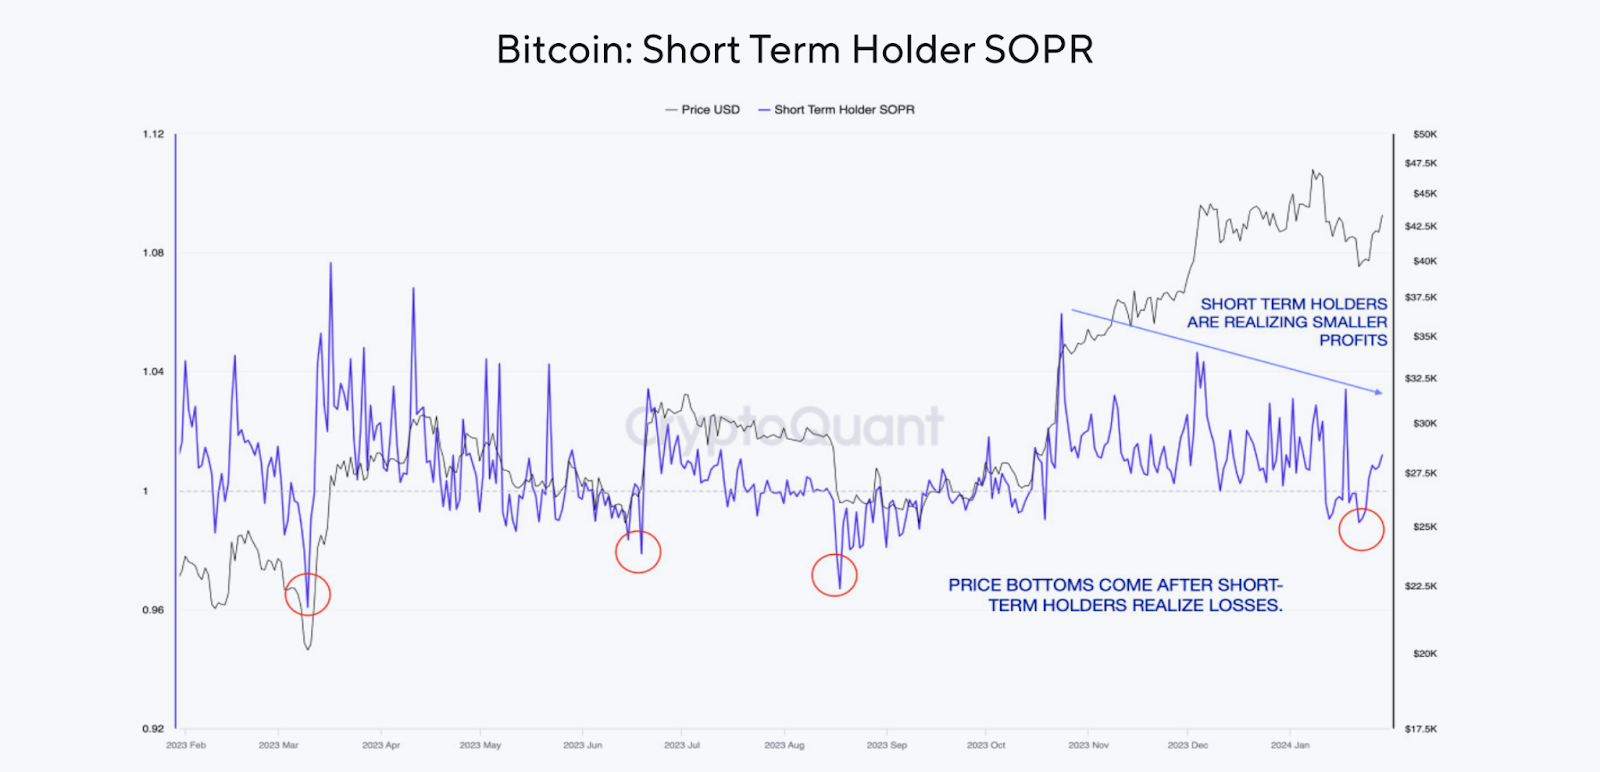 SOPR de los holders de Bitcoin a corto plazo. Fuente: CryptoQuant